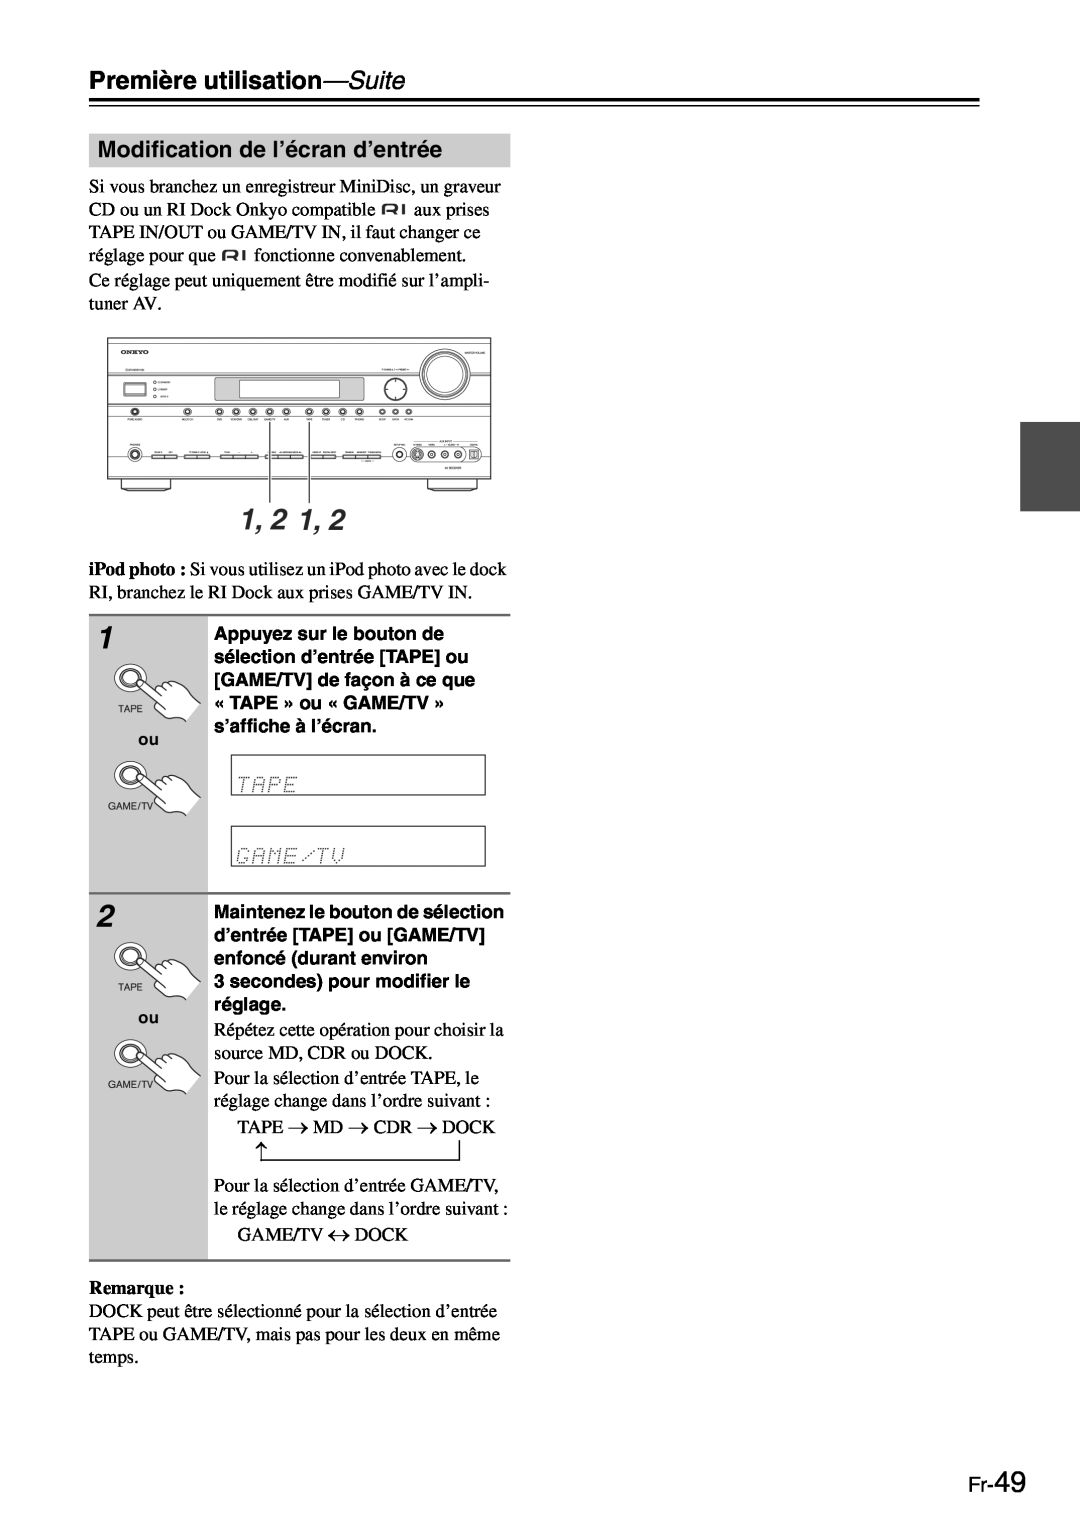 Onkyo TX-SR705 manual 1, 2 1, Modification de l’écran d’entrée, Fr-49, Première utilisation—Suite, Remarque 